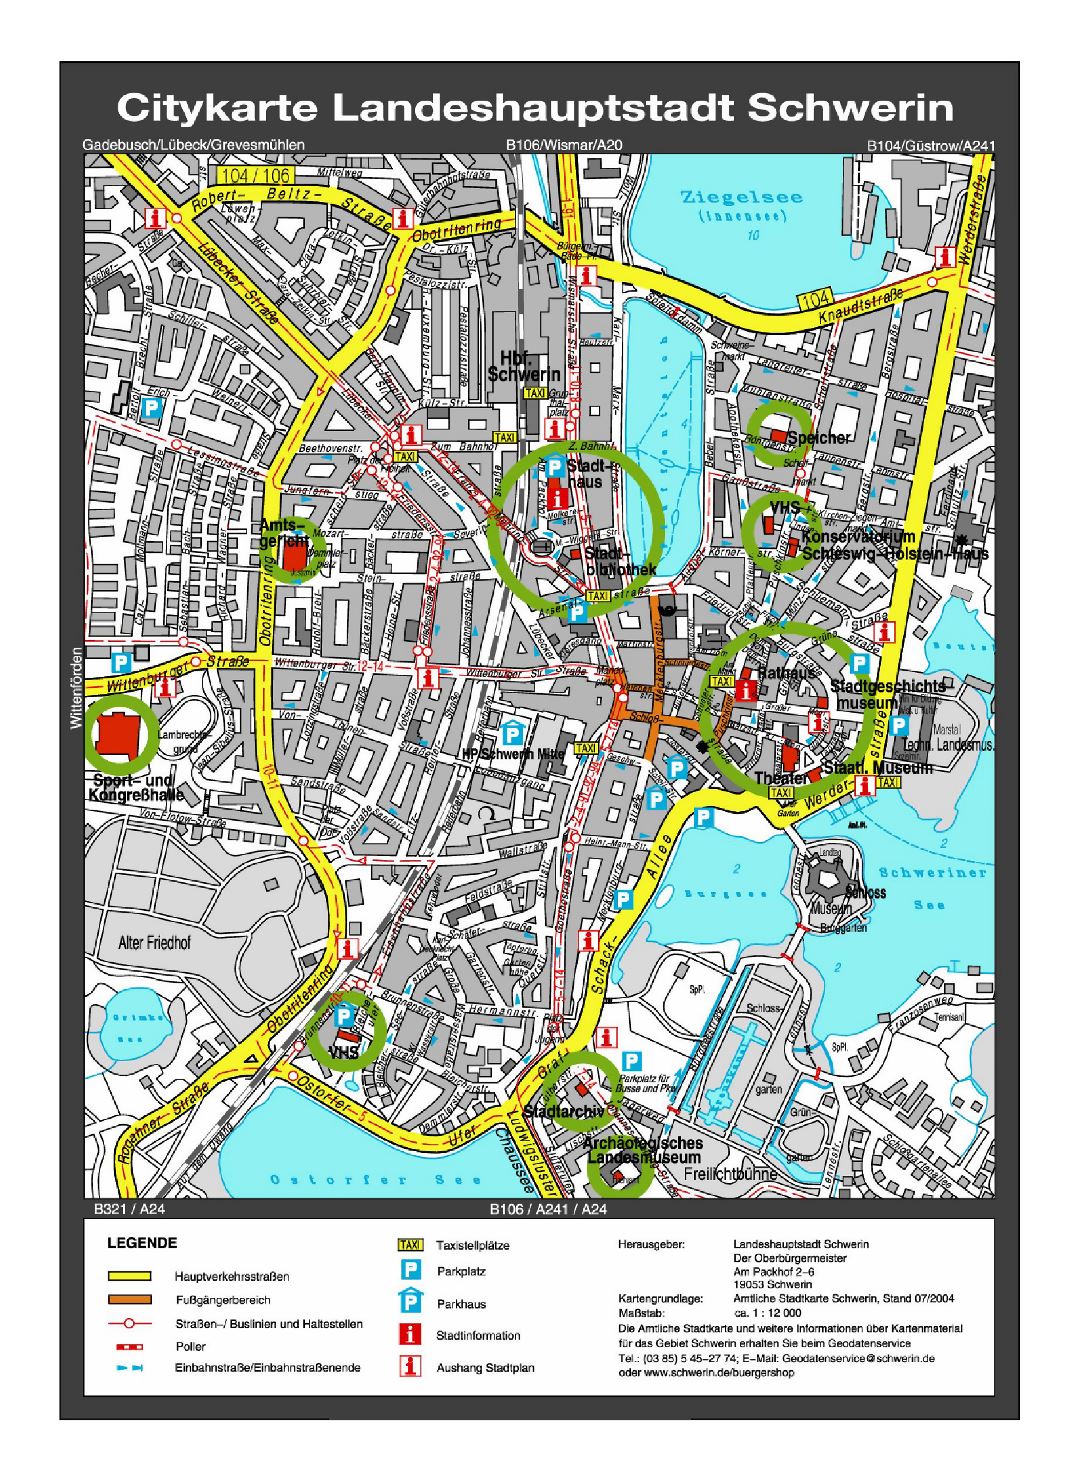 Gran mapa de la detallada de la parte central de la ciudad de Schwerin